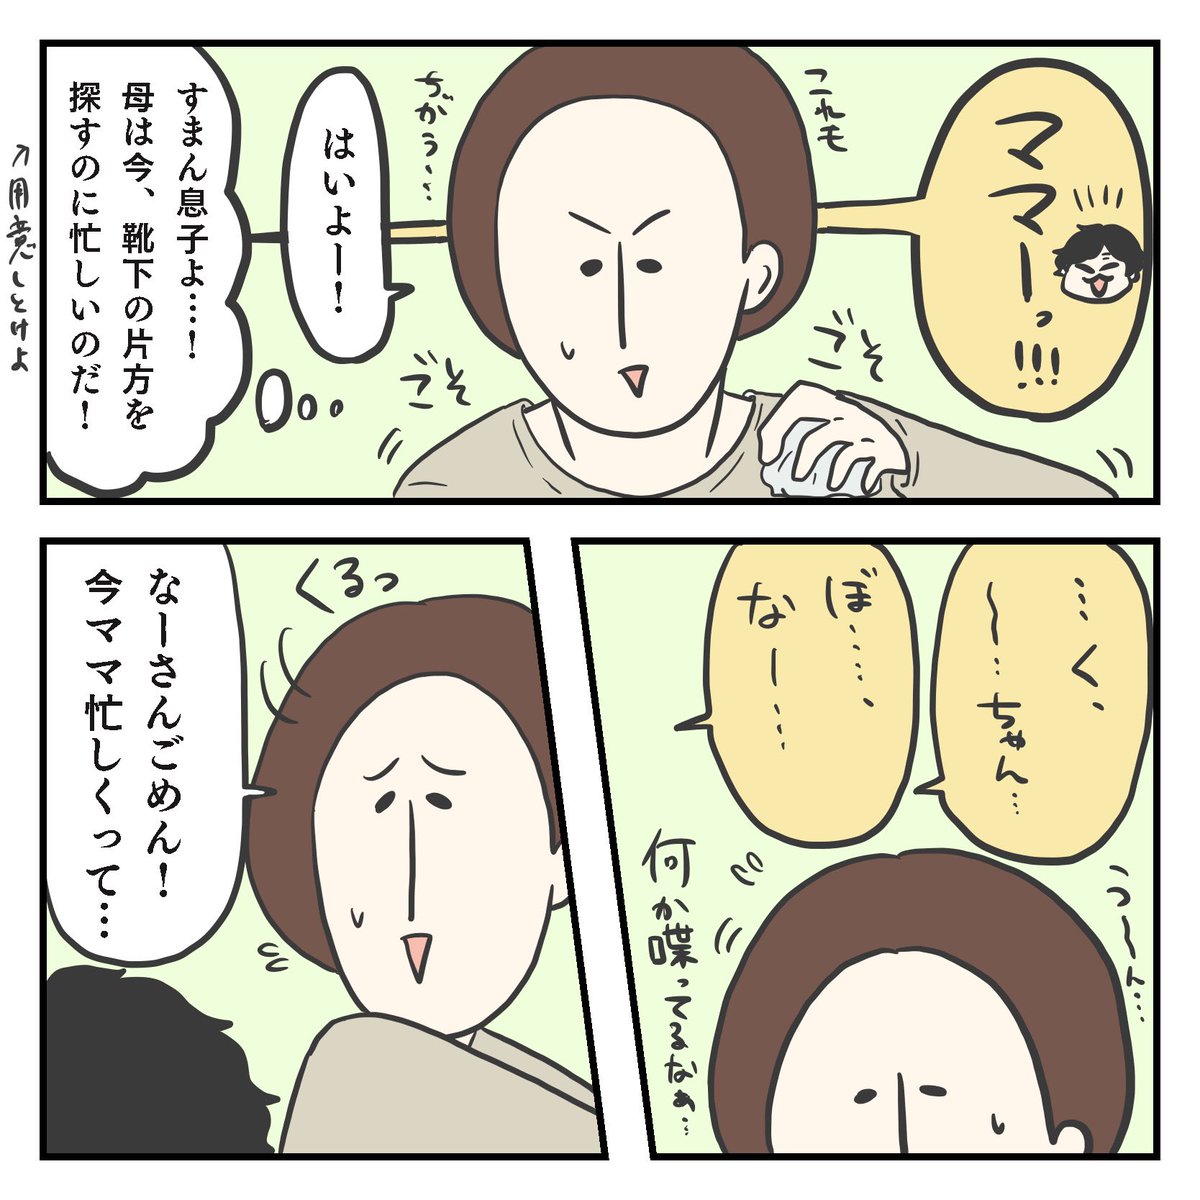 自己紹介(1/3)

#育児漫画 #2歳 